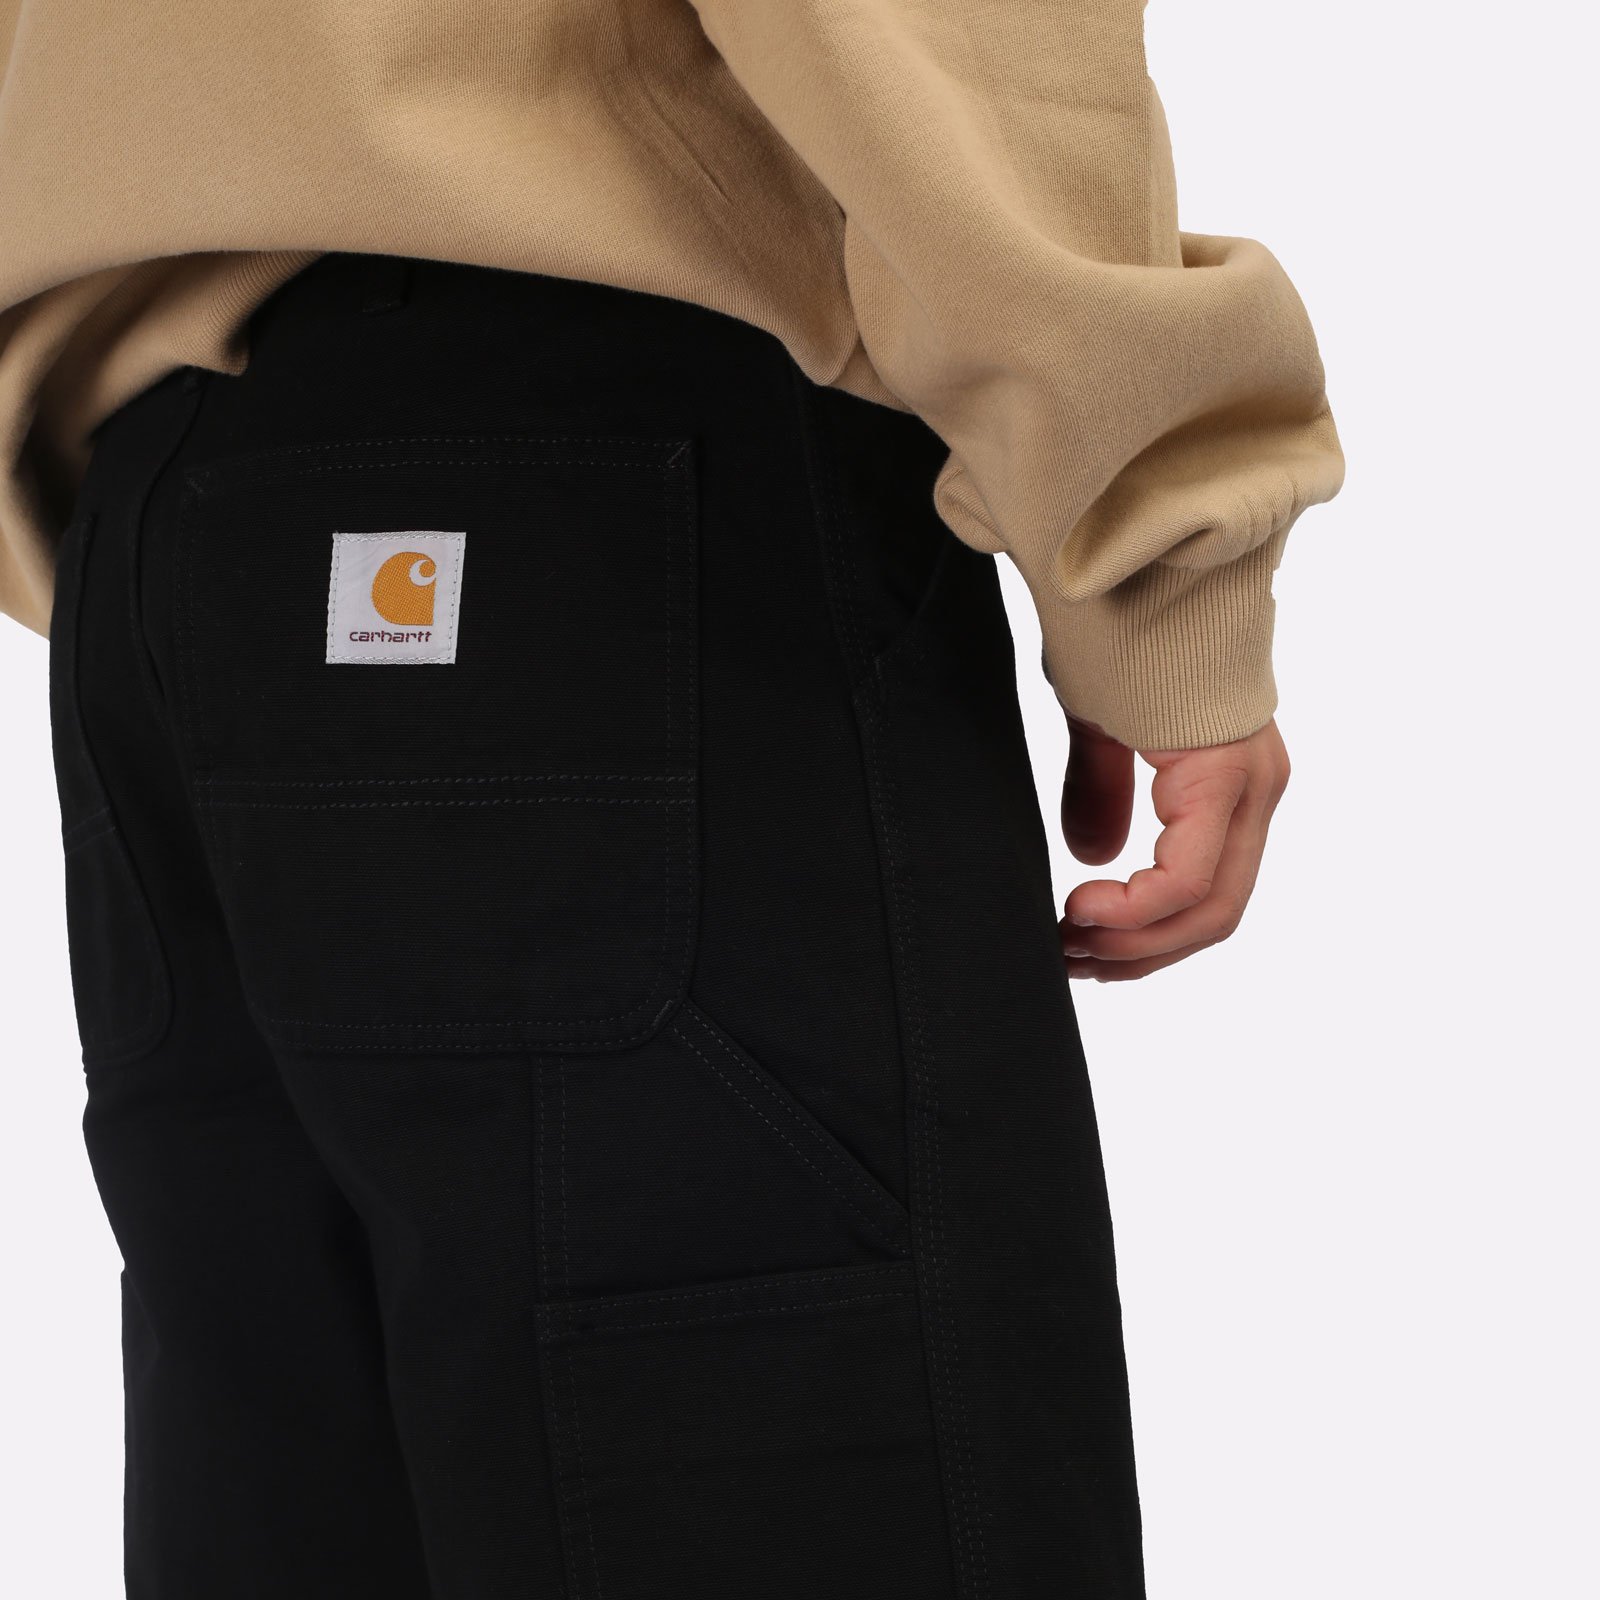 мужские черные шорты Carhartt WIP Single Knee Short I027942-black - цена, описание, фото 5